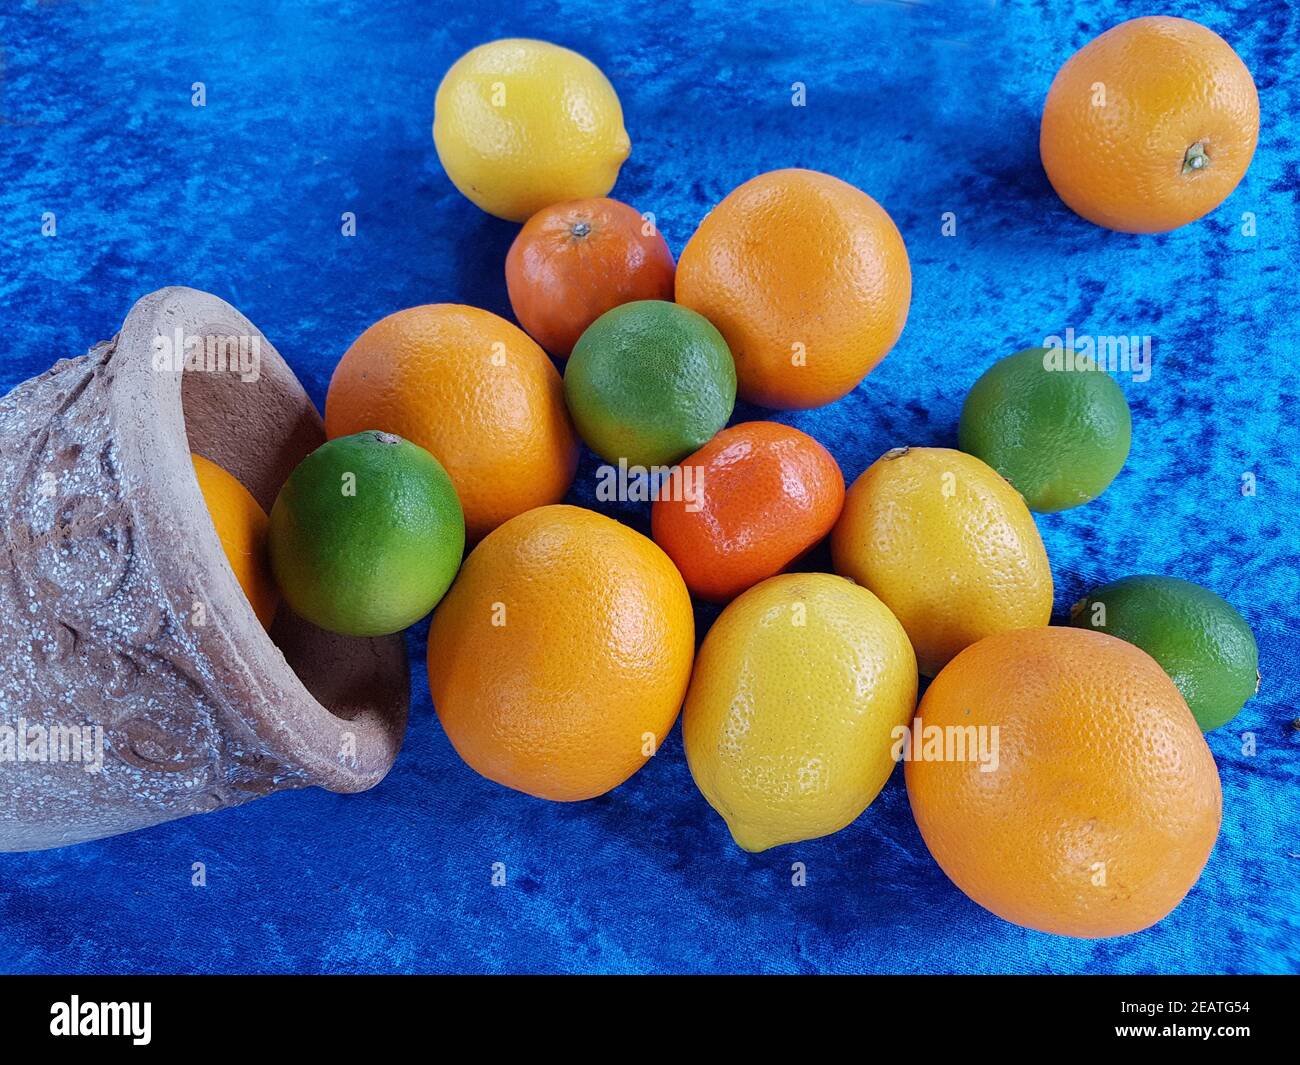 Zitrusfruechte, Zitrone, Citrus, Orangen Foto Stock